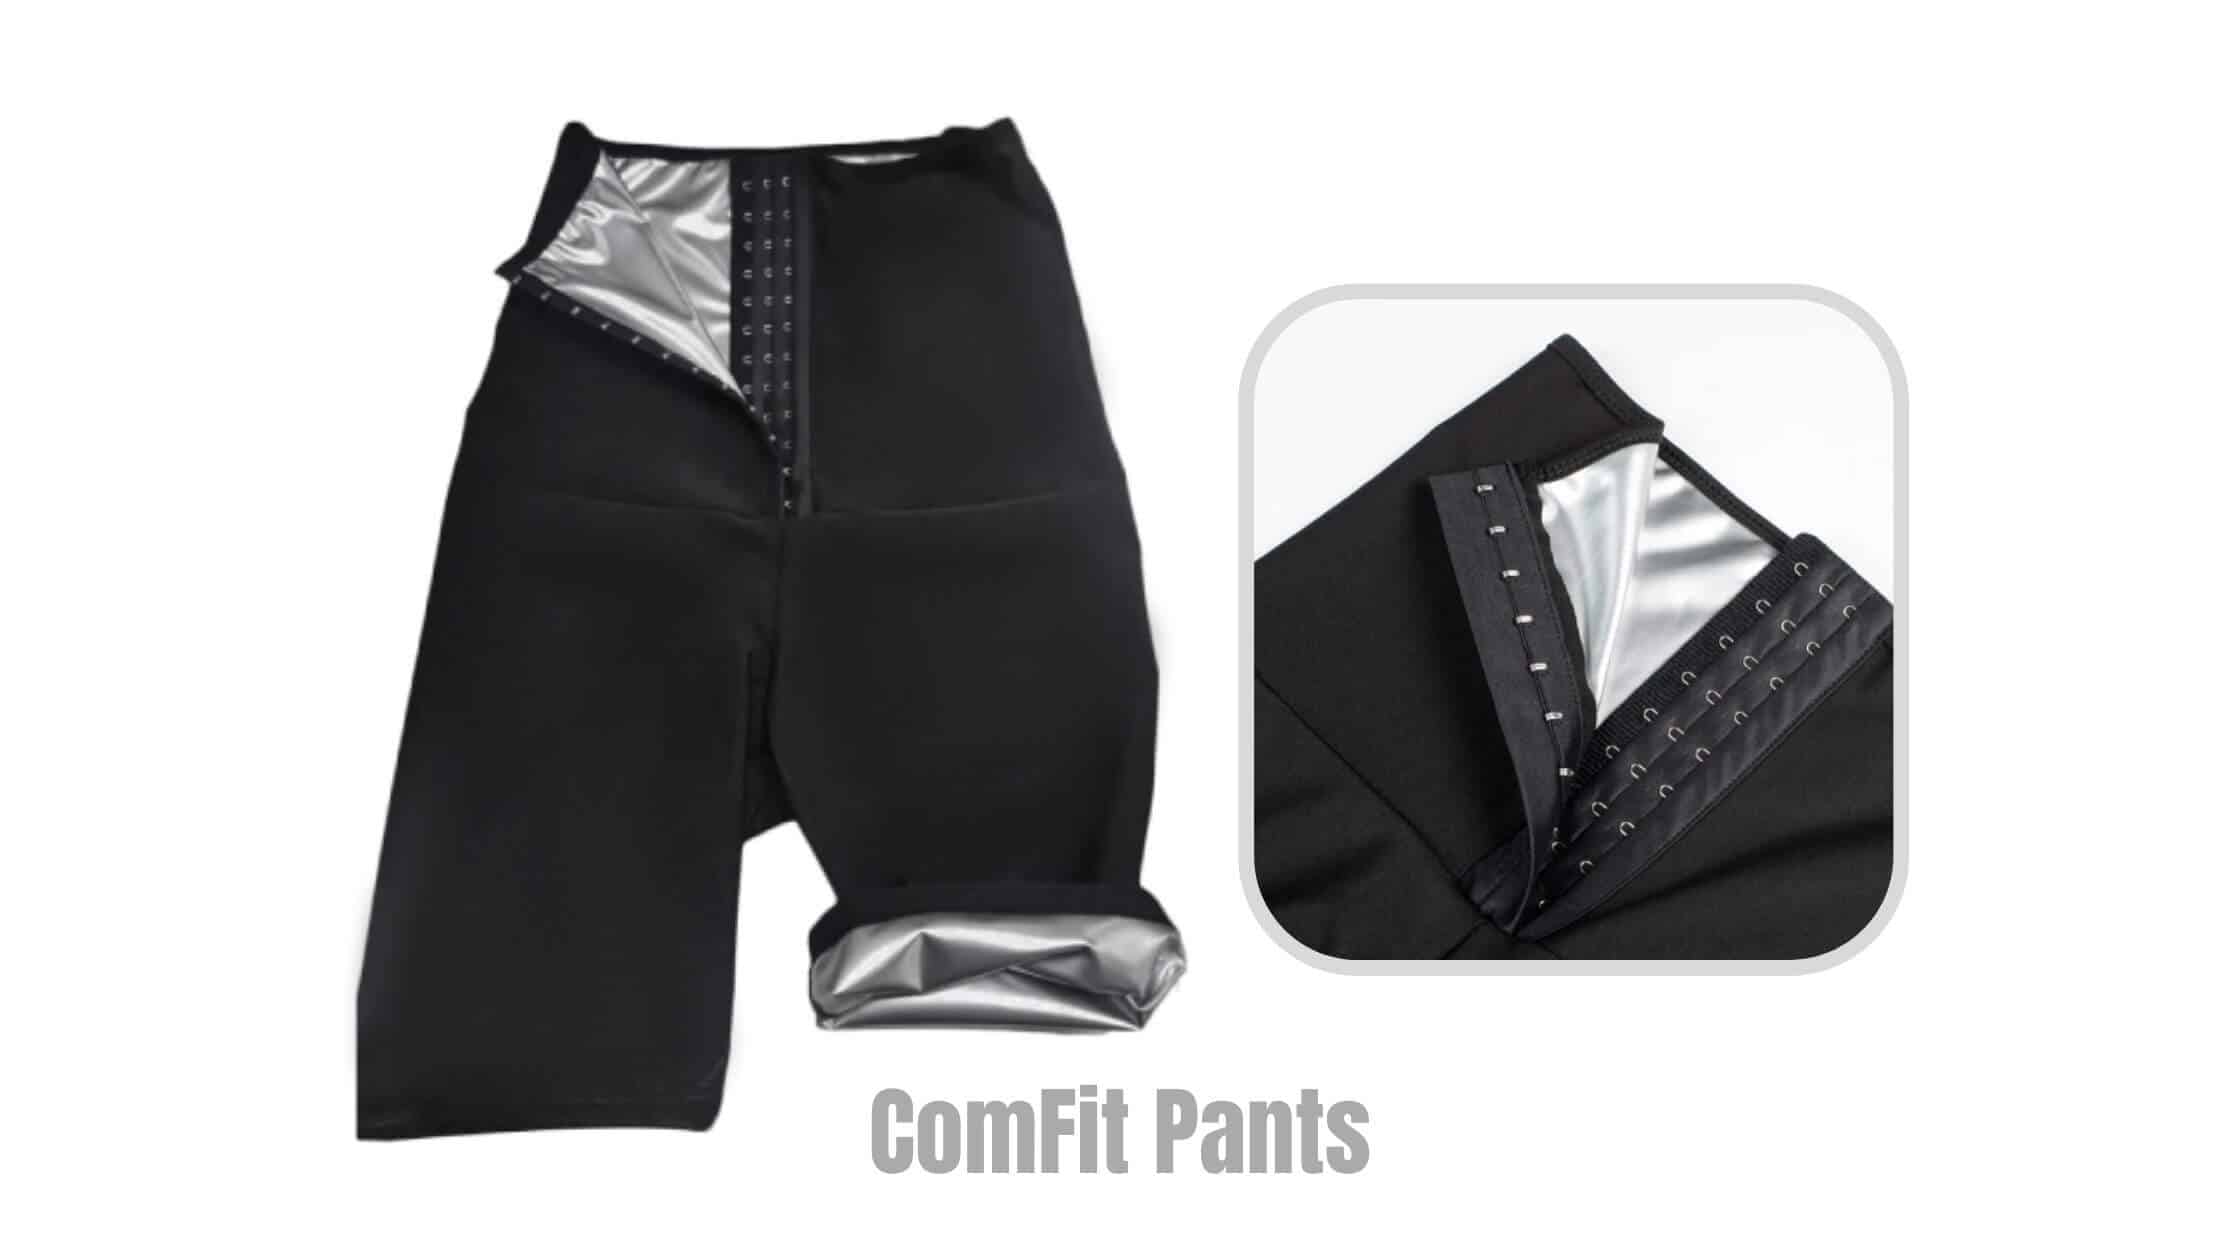 ComFit Pants Review